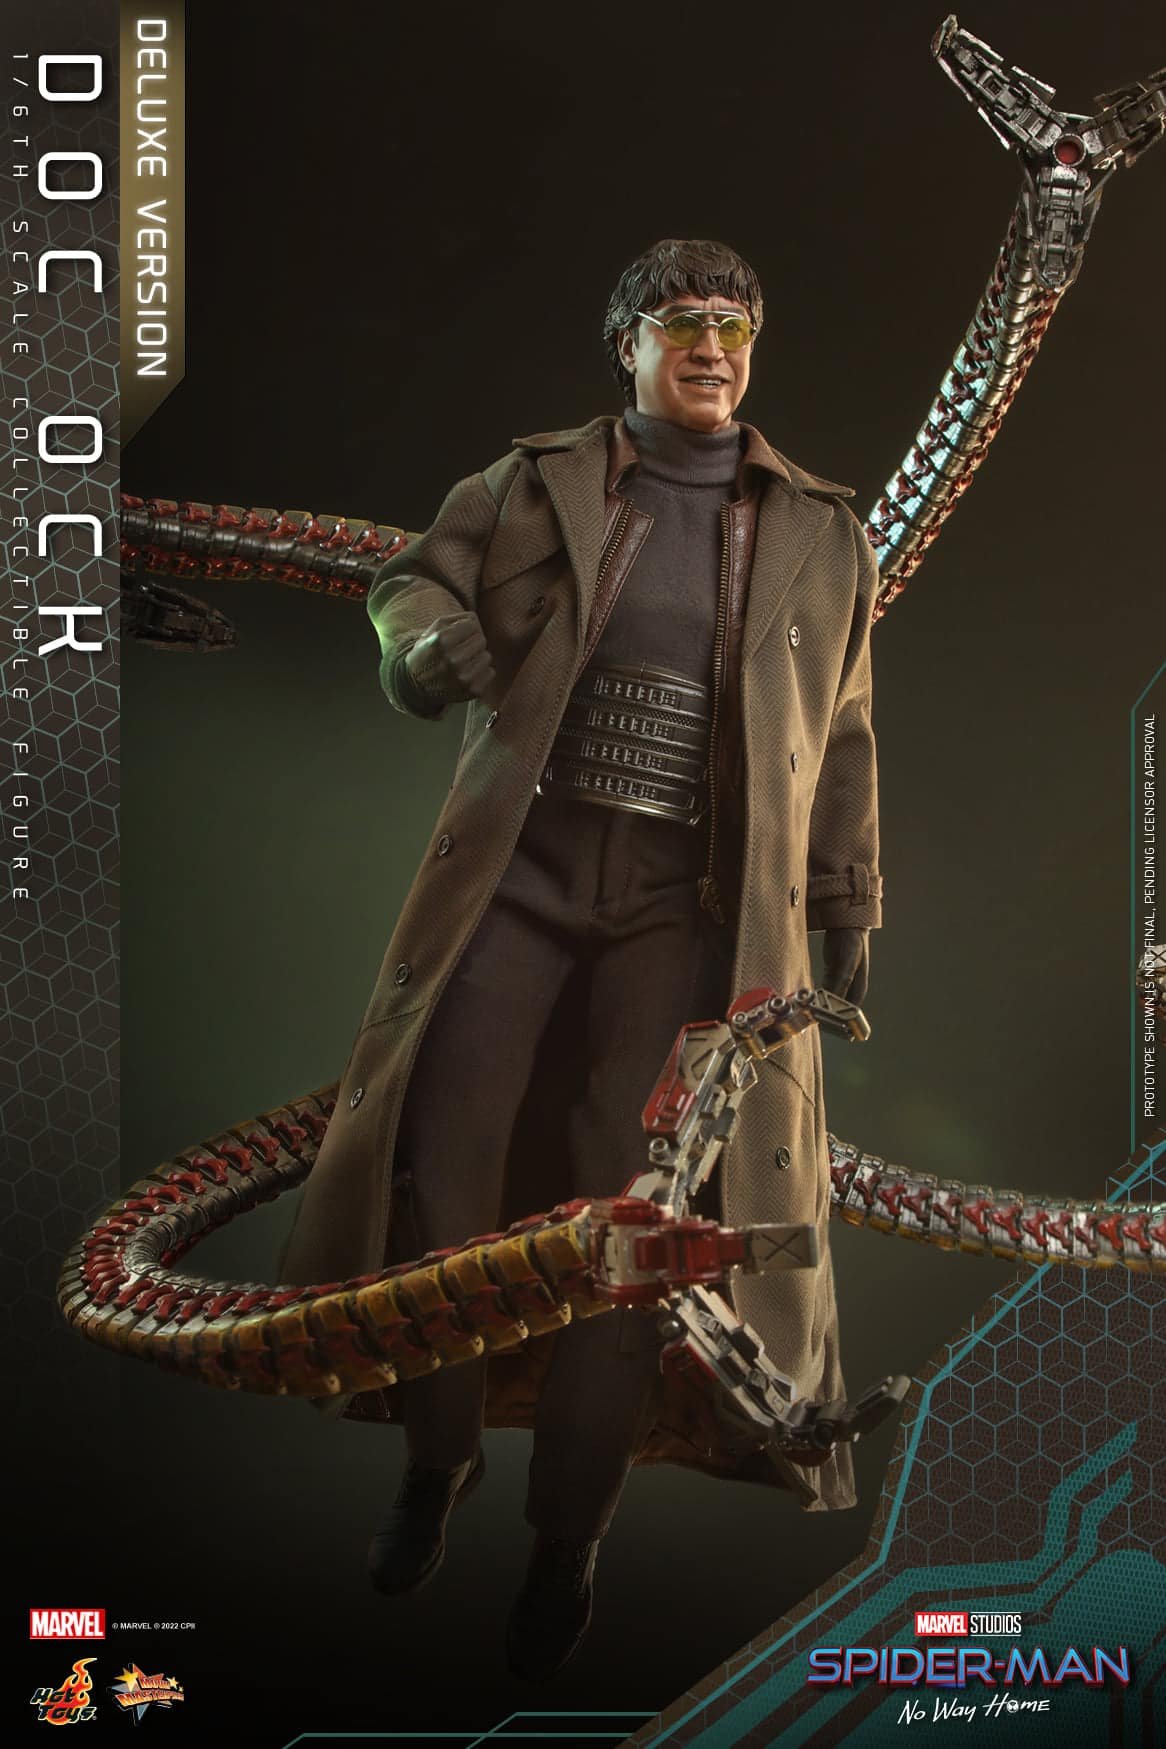 Detalhes inéditos do traje de Doutor Octopus são revelados em